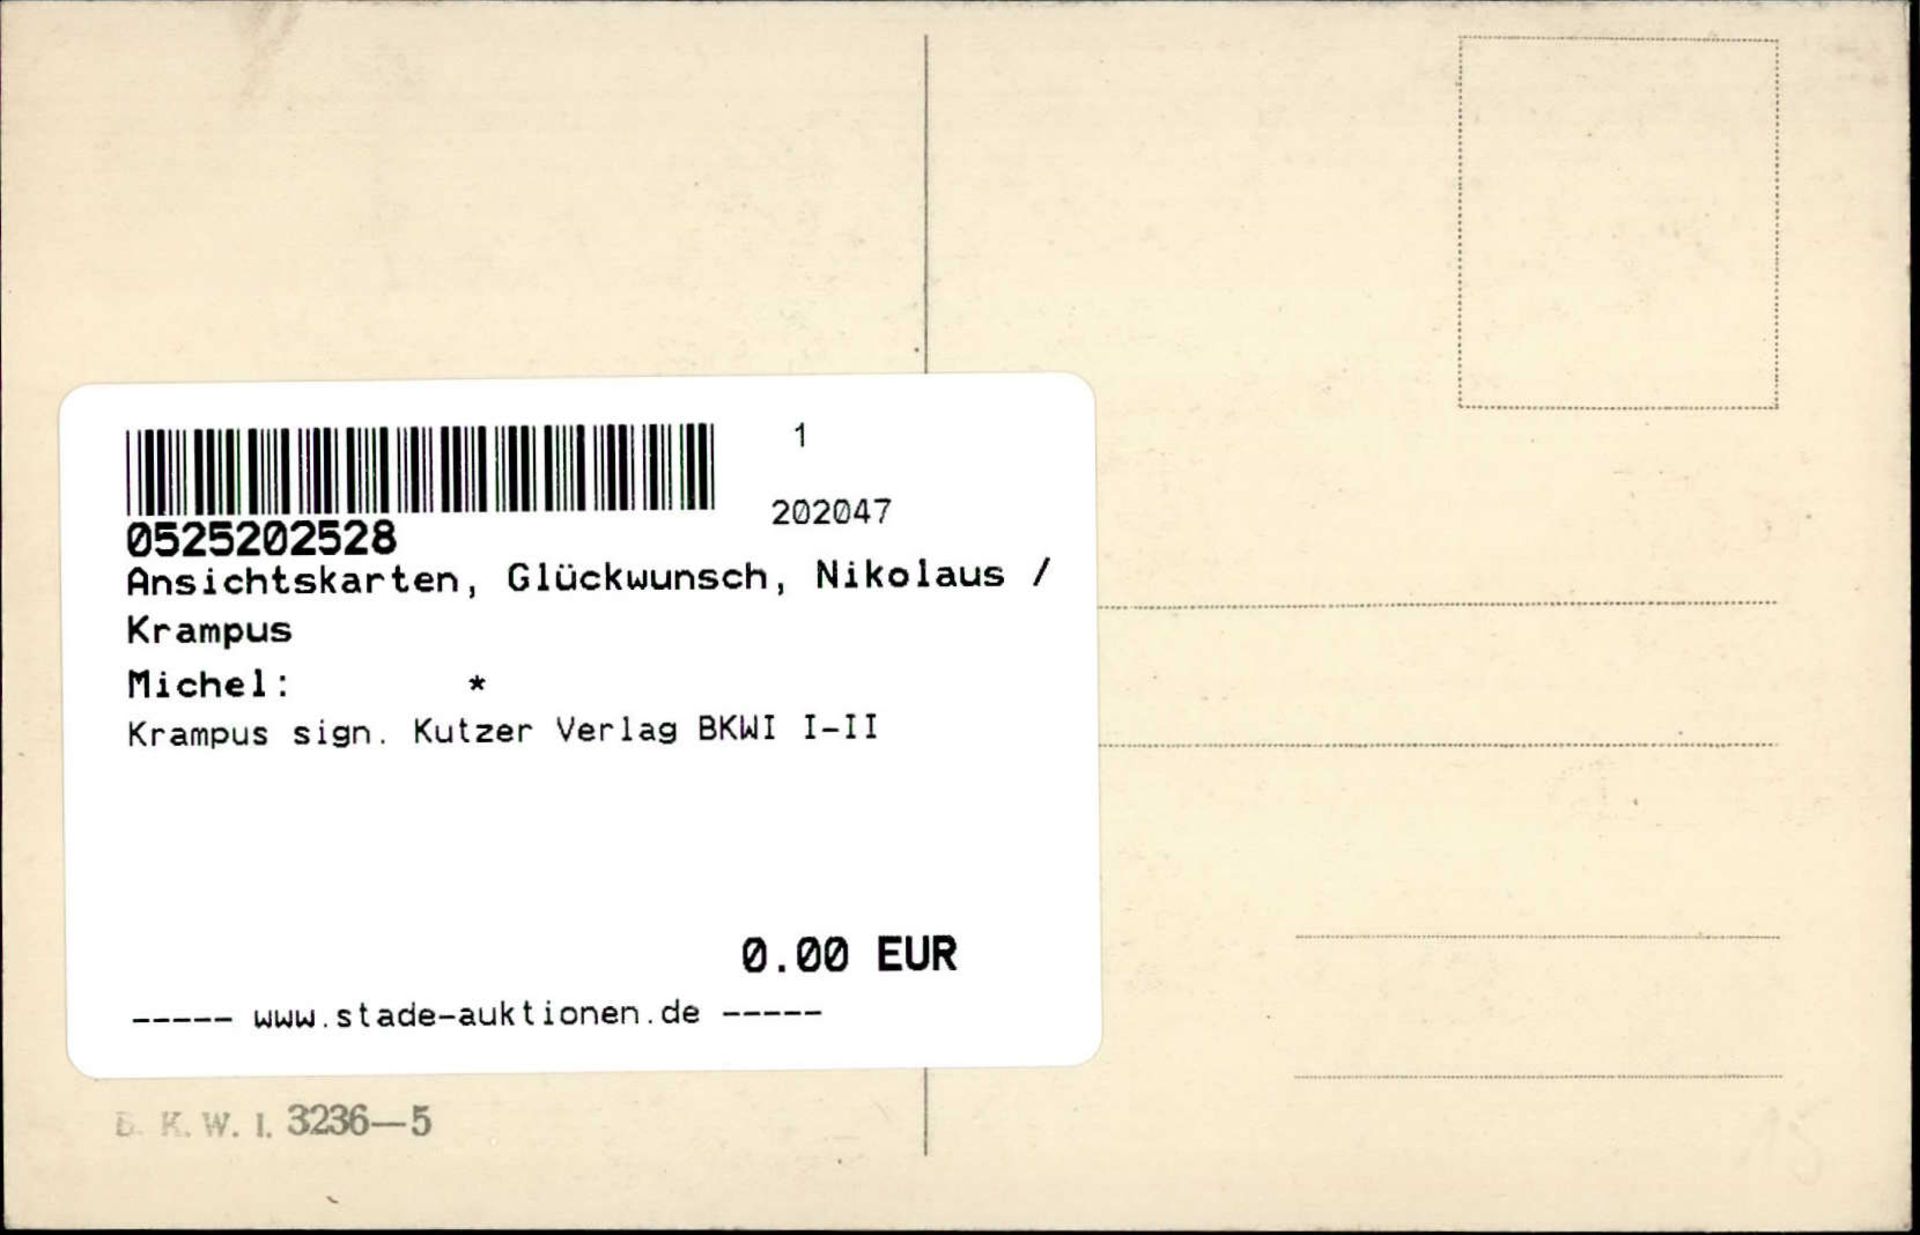 Krampus sign. Kutzer Verlag BKWI I-II - Bild 2 aus 2